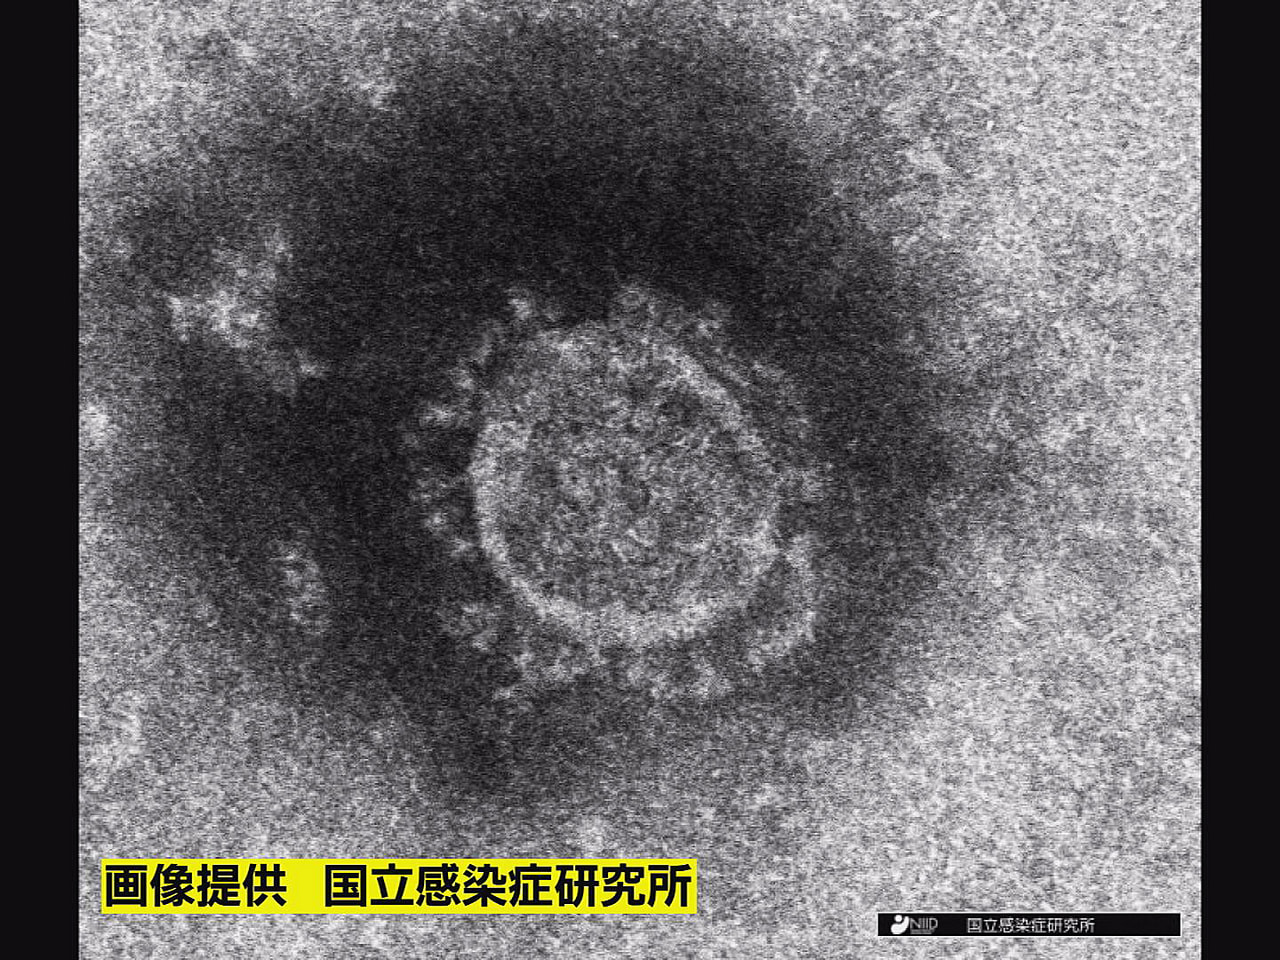 岐阜県は１１日、新型コロナウイルスの新規感染者が２８２人確認されたと発表しました...